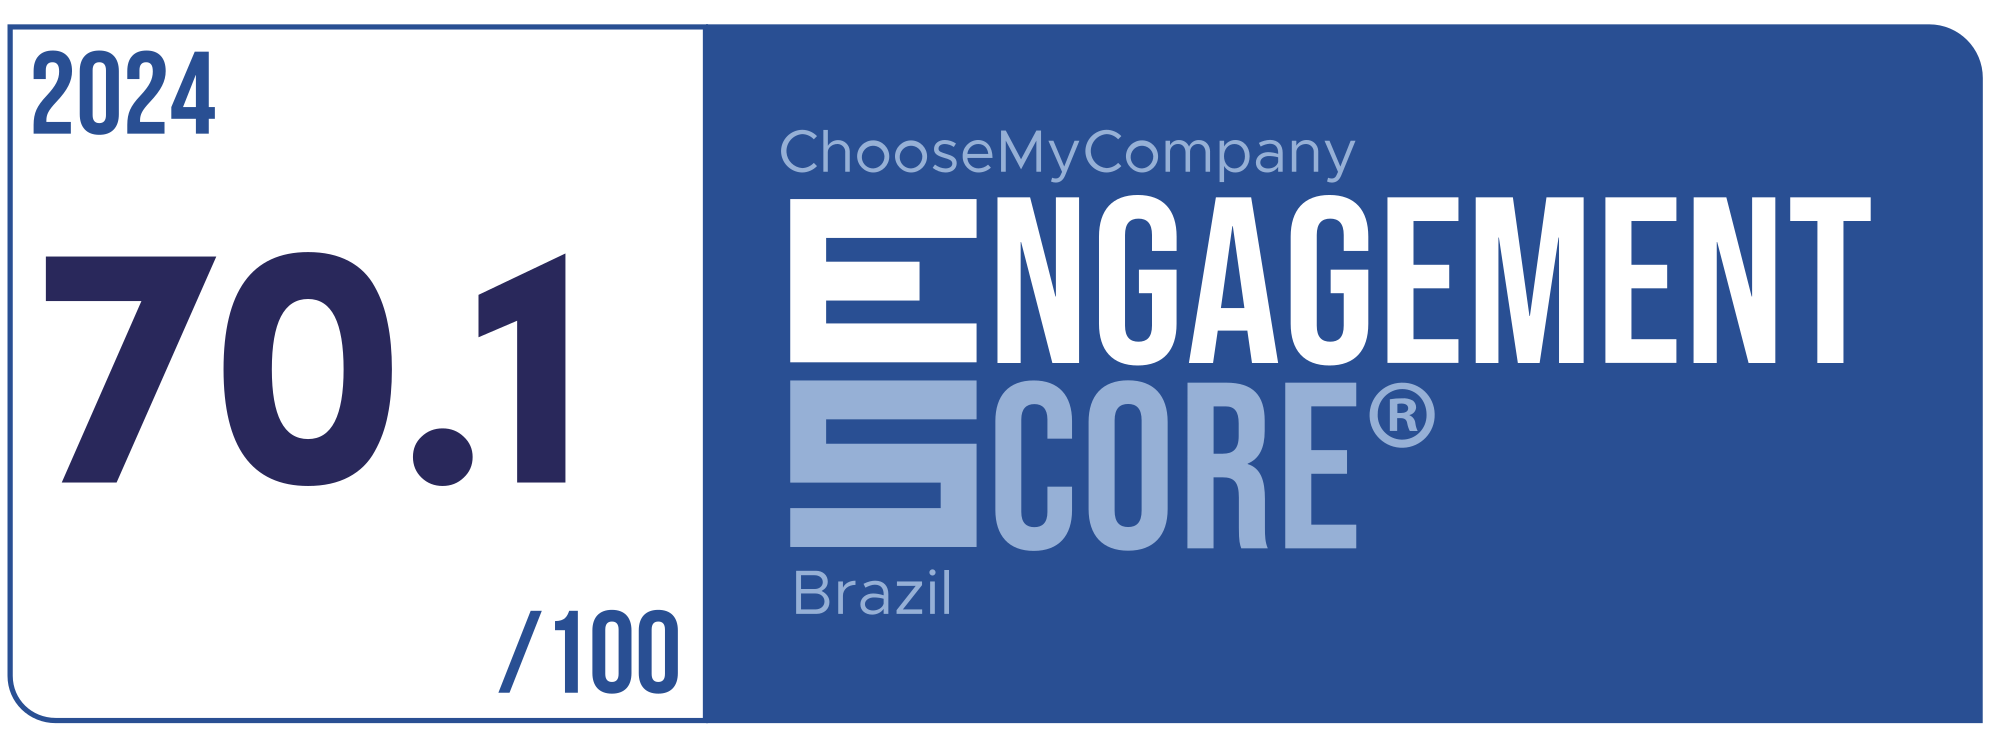 Label Engagement Score 2024 Brazil